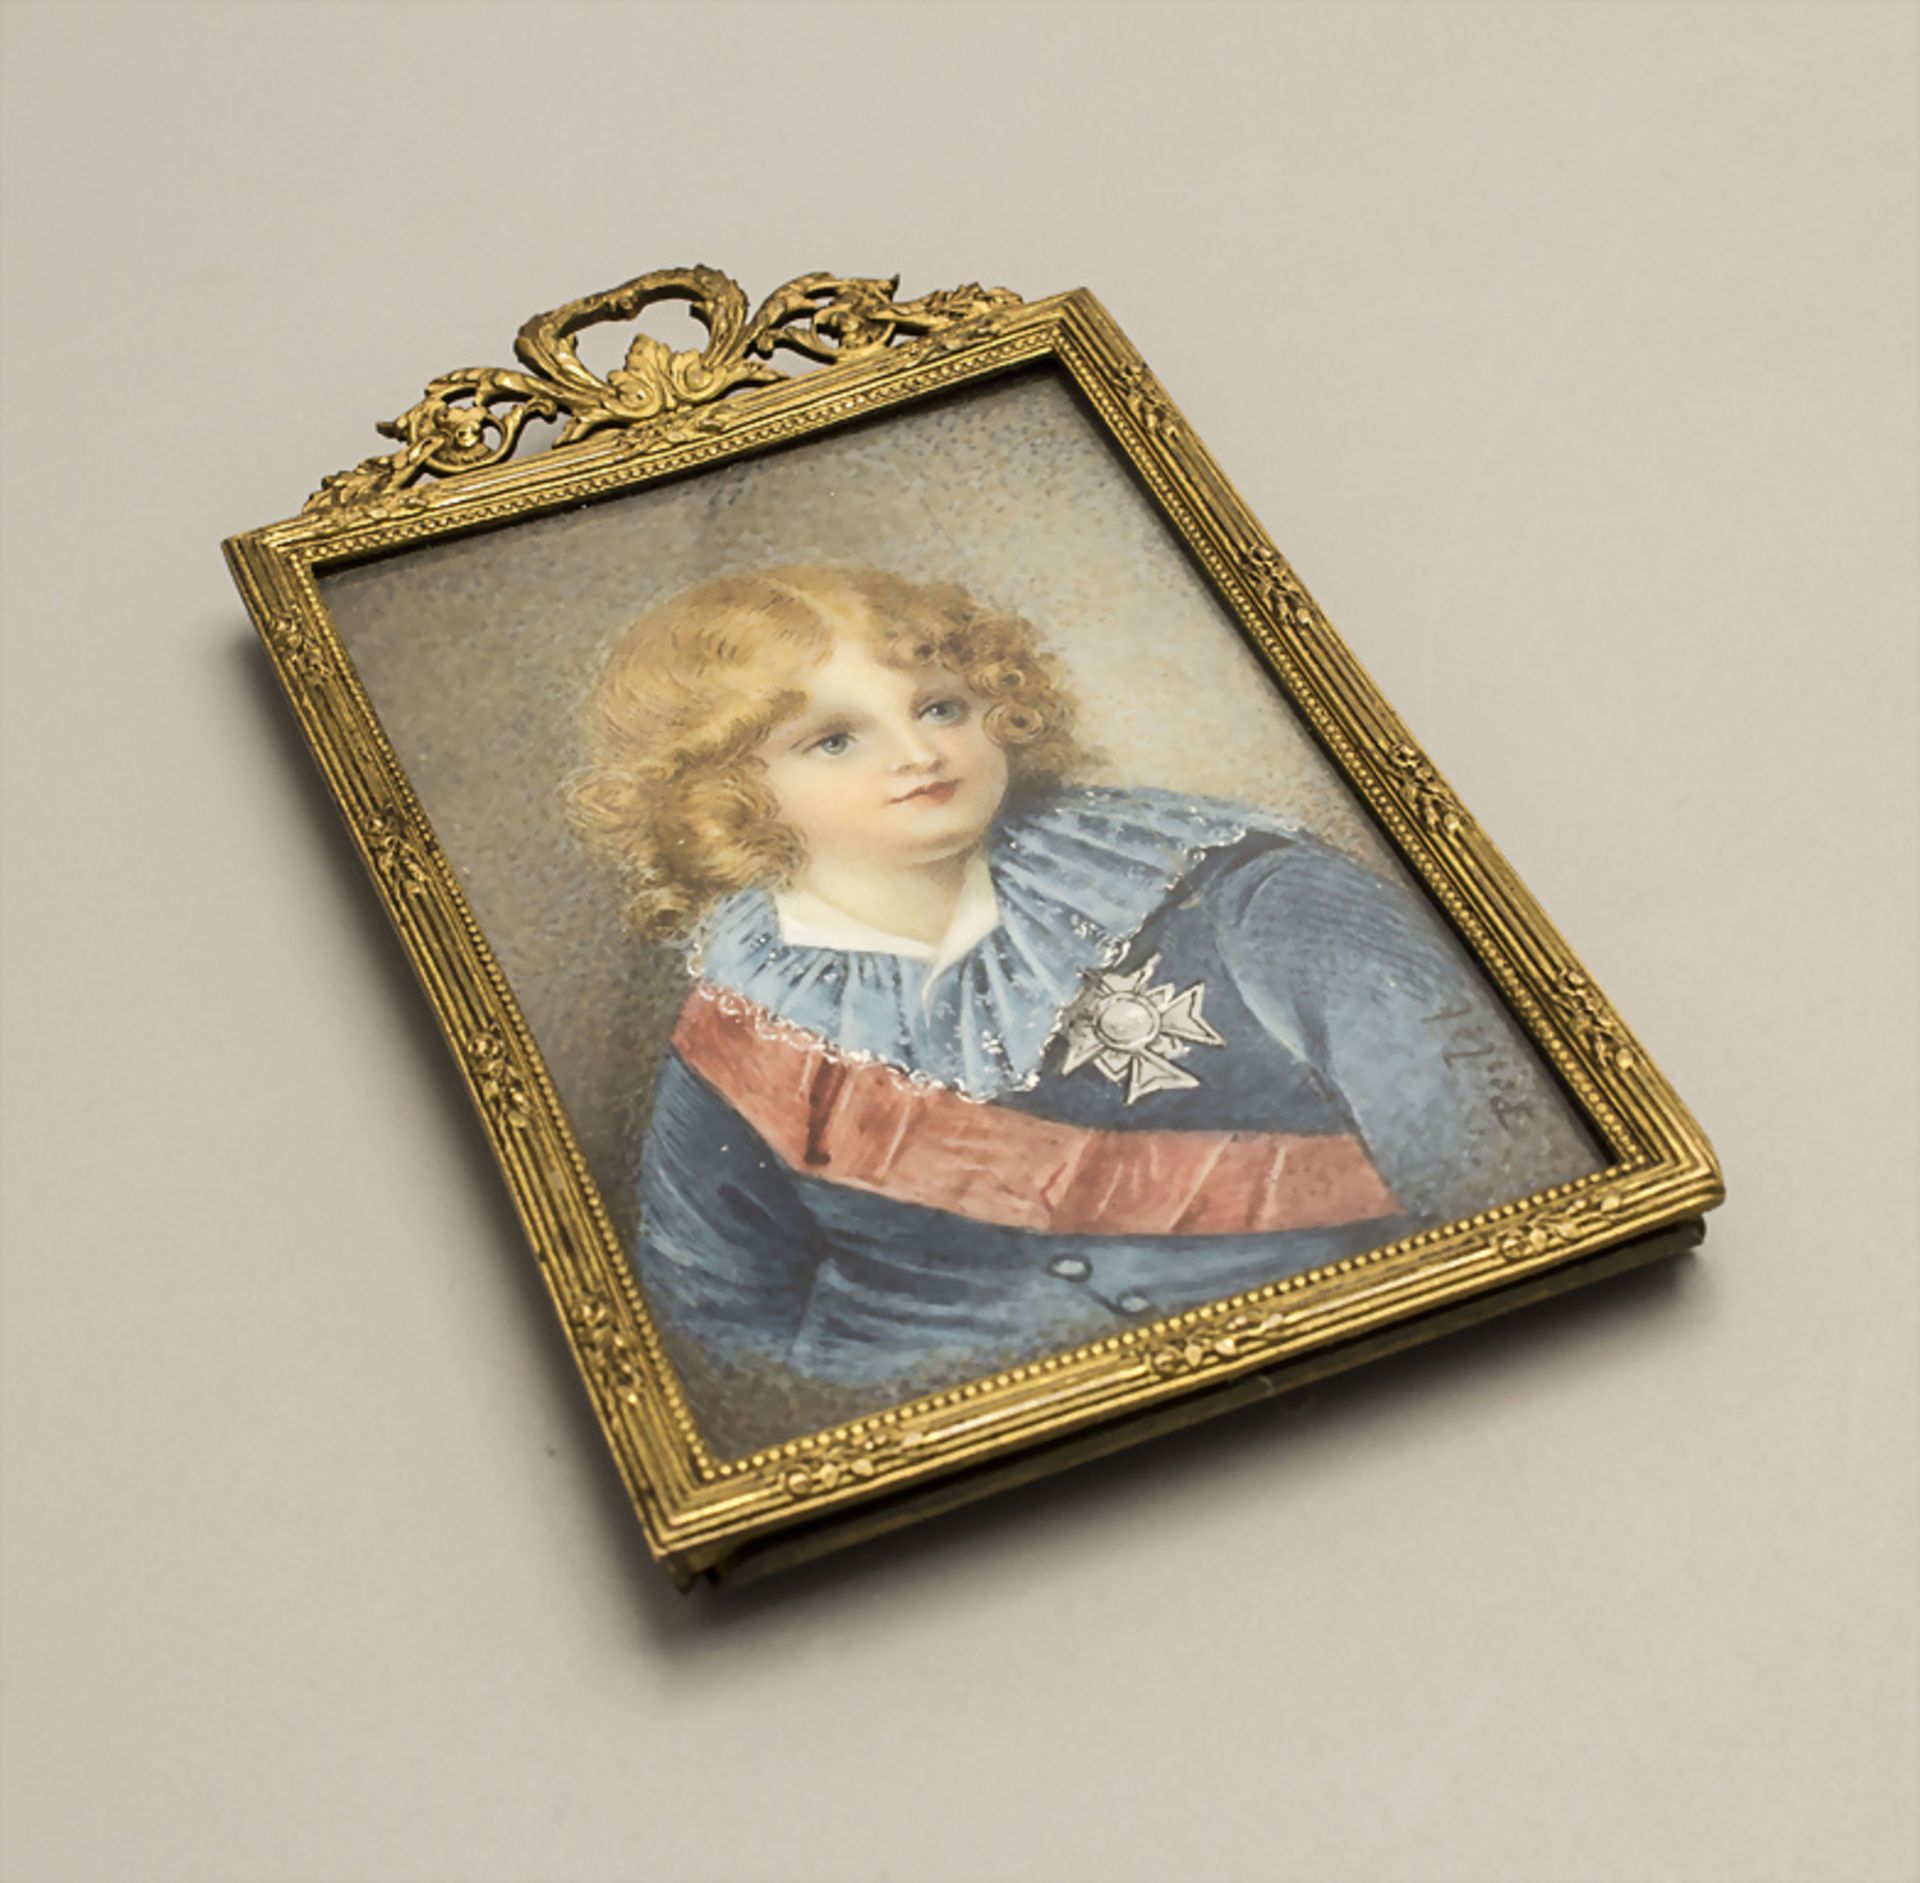 Aimée PERLET (aktiv um 1790-1854) attr., Miniatur 'Ludwig XVII. Kronprinz von Frankreich' /  A ... - Bild 3 aus 5